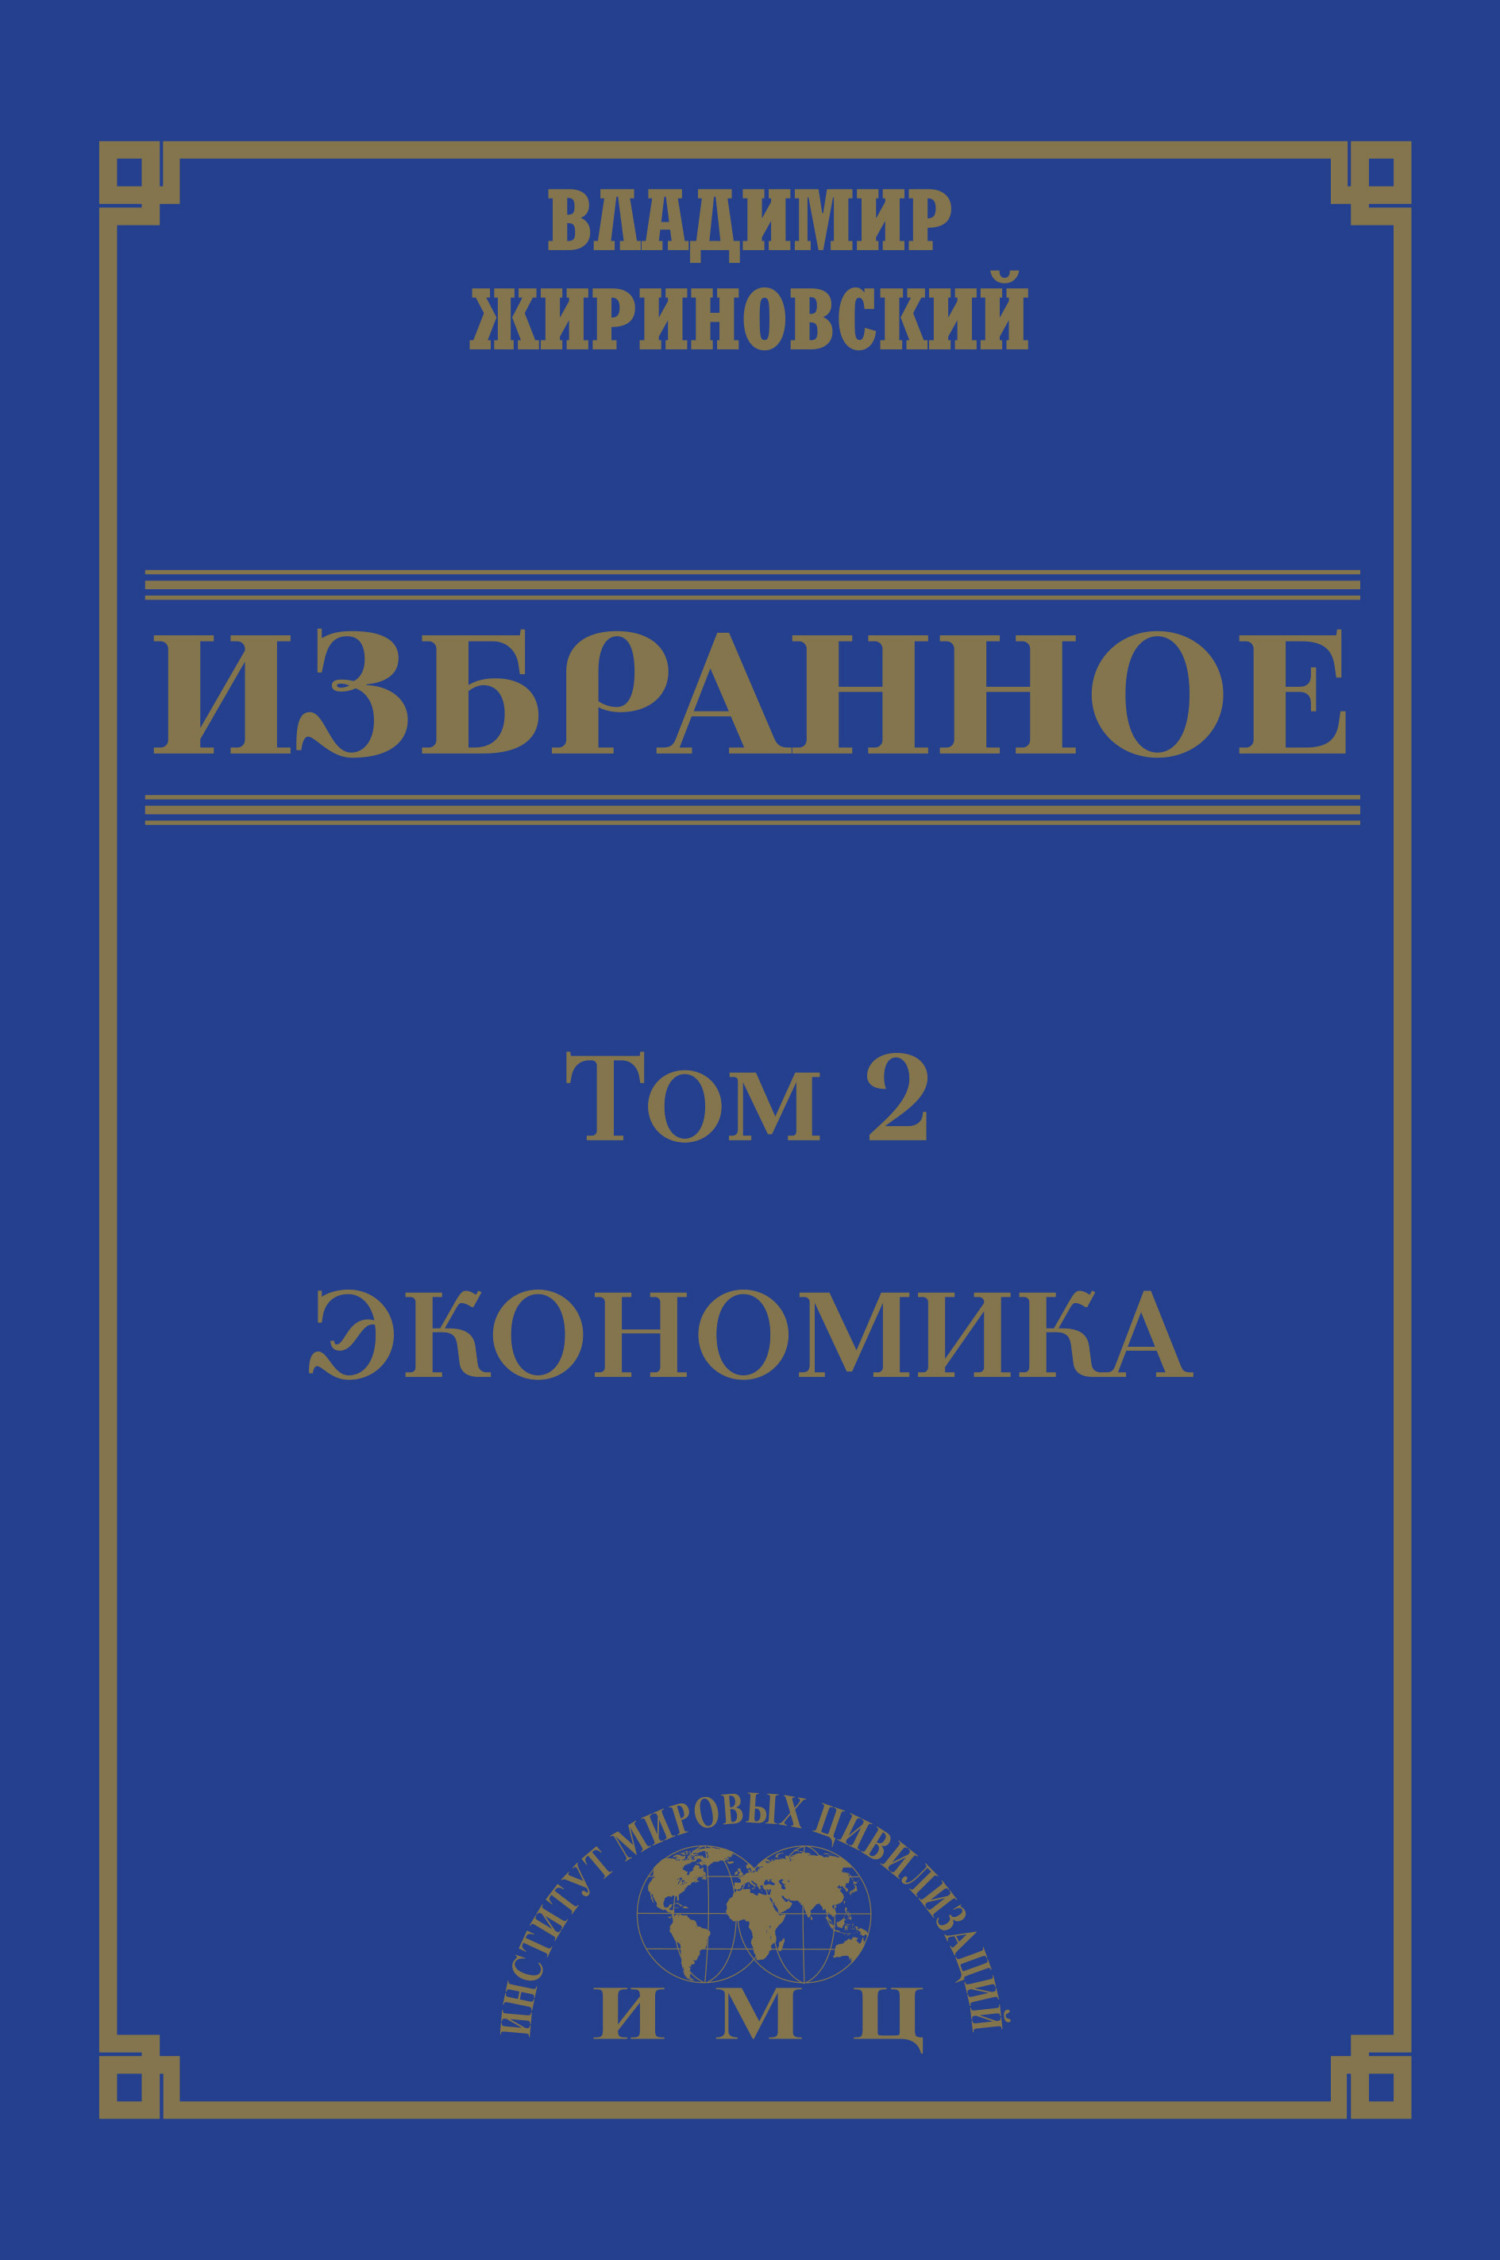 Избранное в 3 томах. Том 2: Экономика - Владимир Вольфович Жириновский